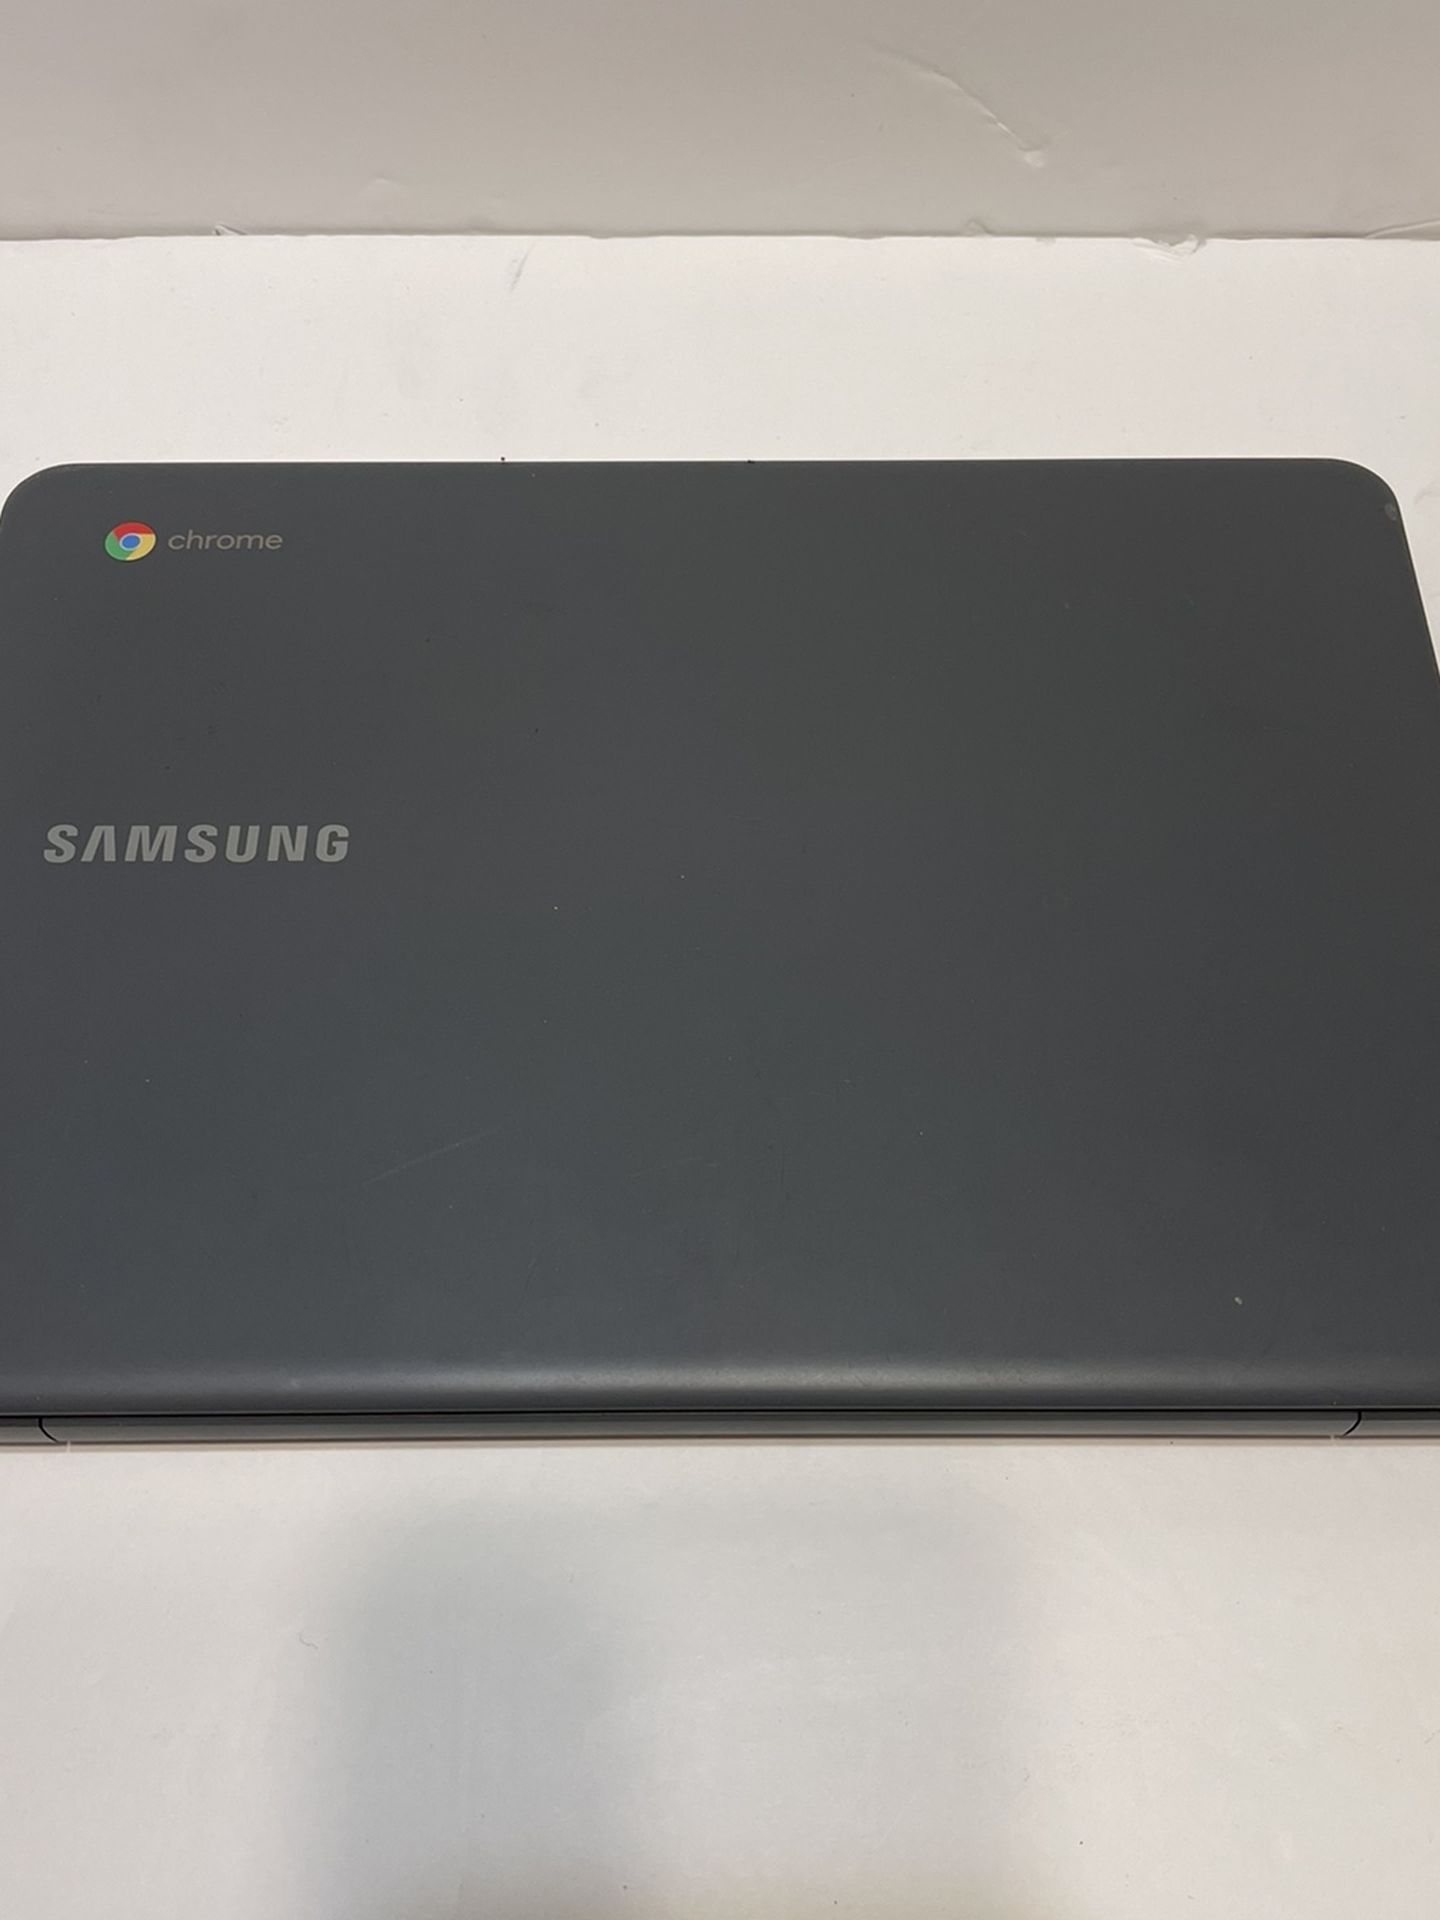 Samsung Chromebook 11.6" HD Display, Intel Atom x5-E8000 1.04GHz, 2GB RAM, 16GB eMMC, HDMI, Card Reader, Wi-Fi, Bluetooth, Chrome